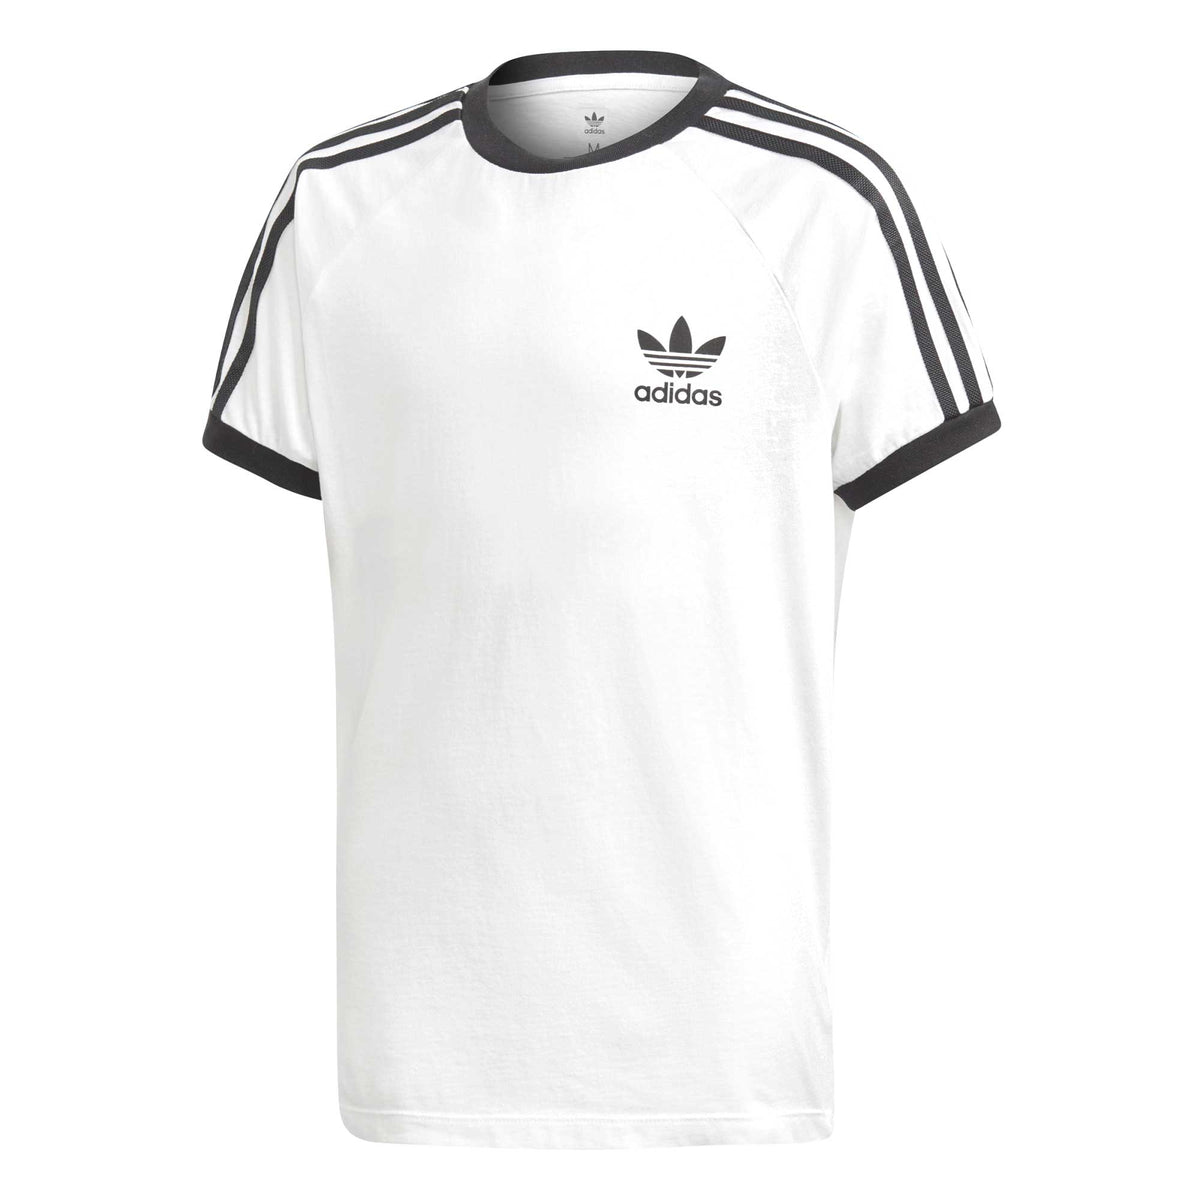 Individualiteit Tegen inspanning Adidas Originals Junior 3-Stripes California Tee White-Black